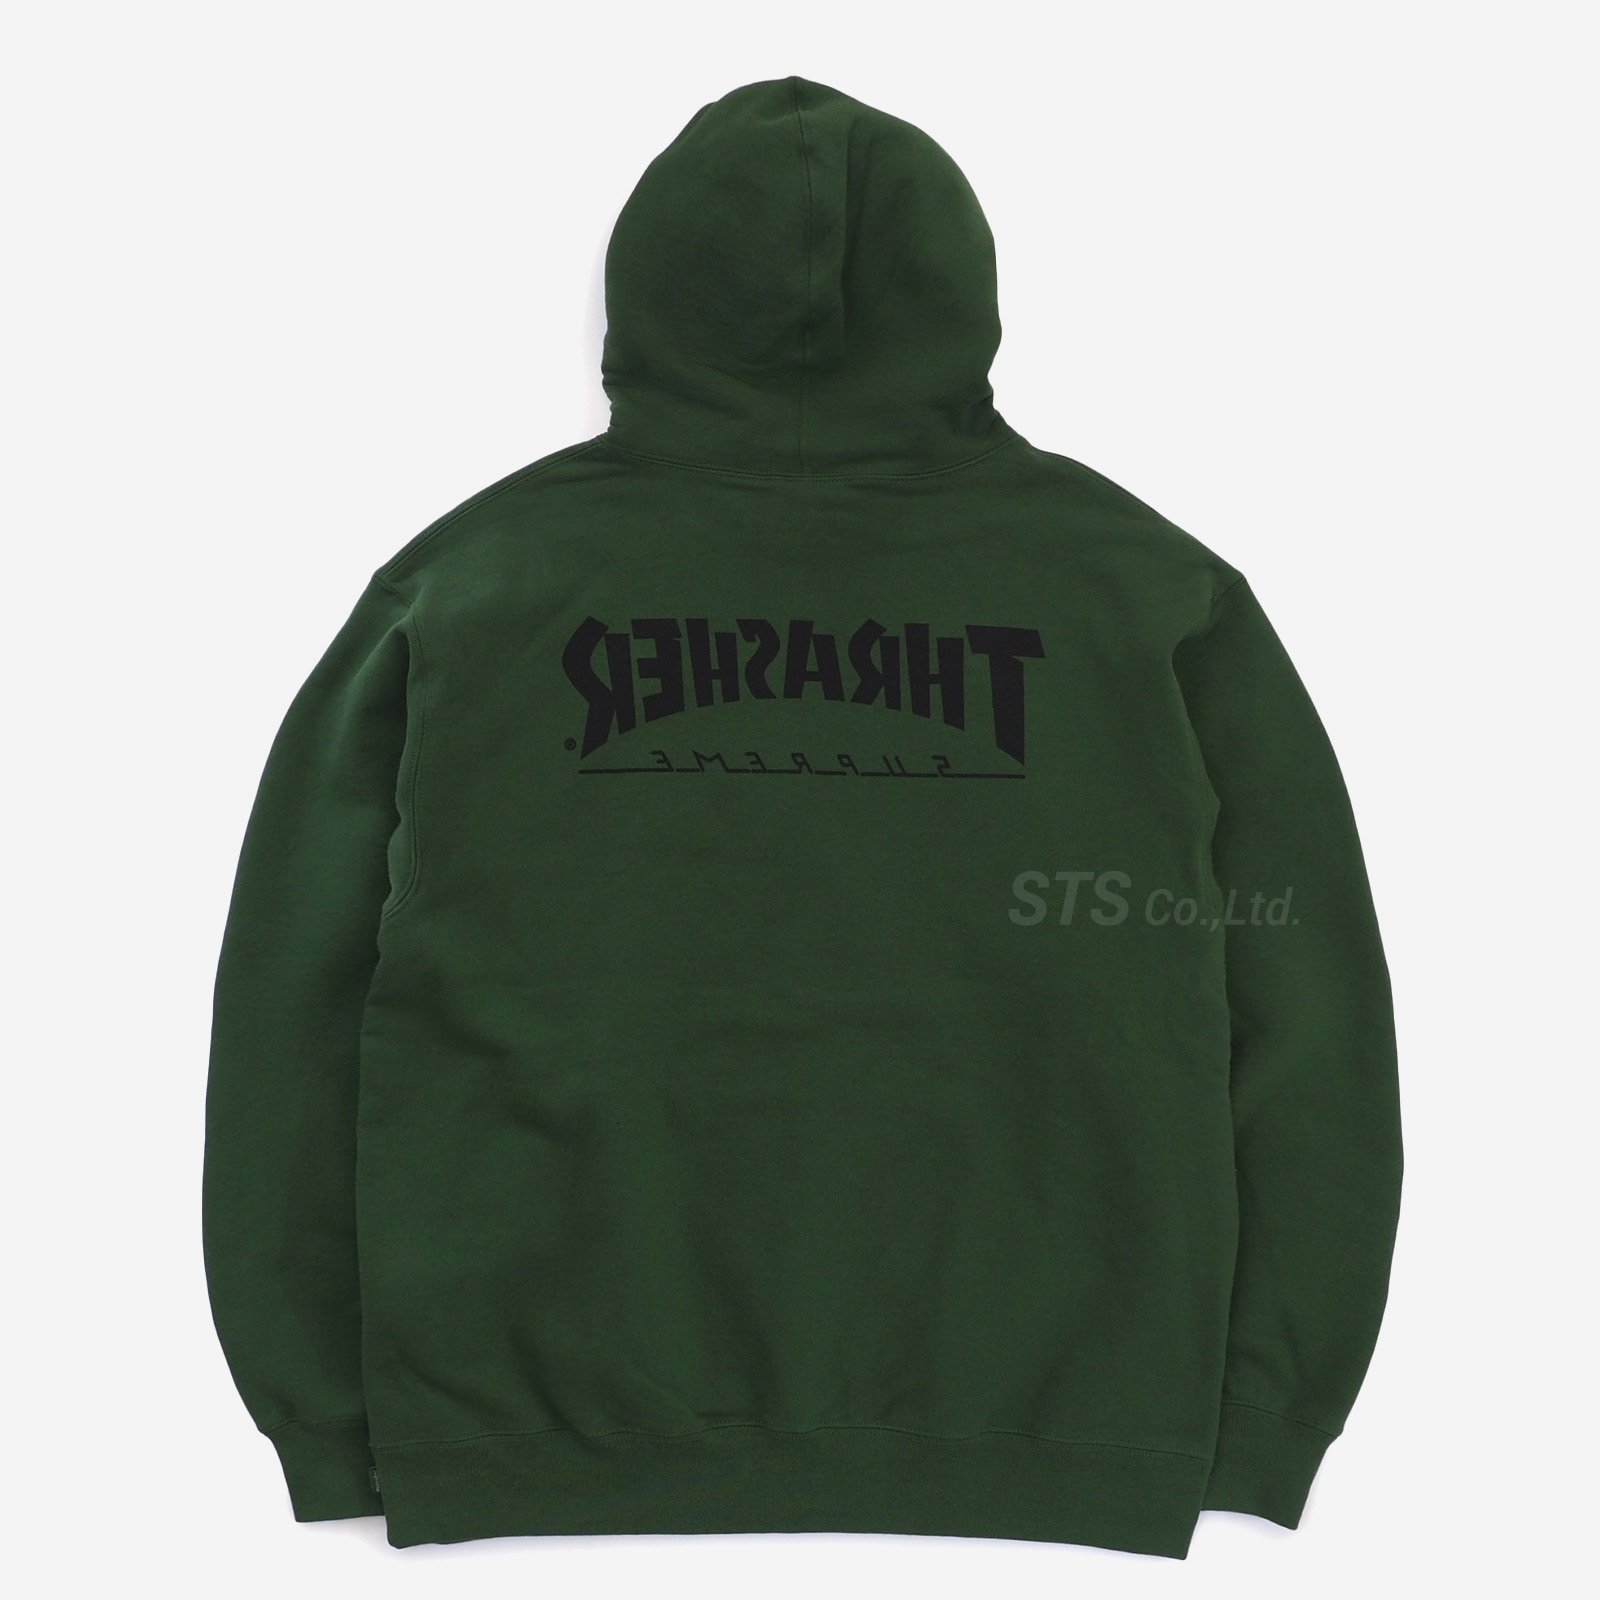 Supreme/Thrasher Hooded Sweatshirt - UG.SHAFT